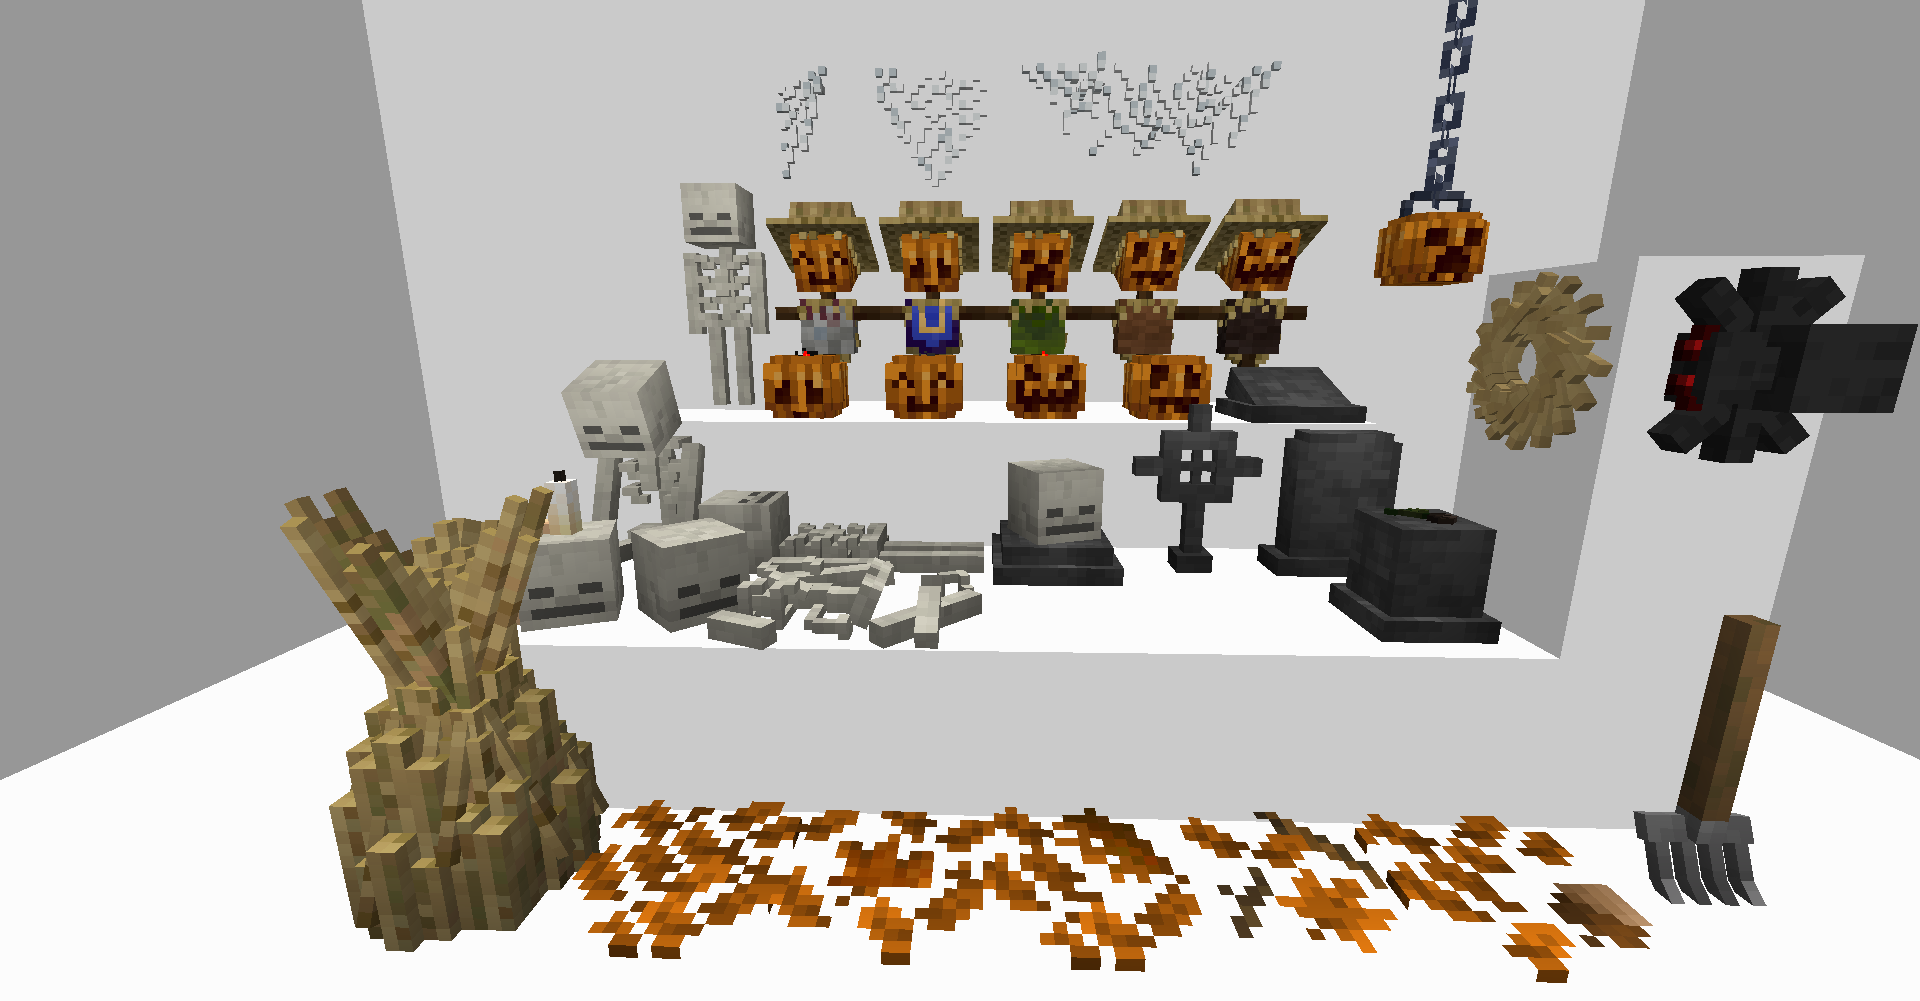 Halloween decoration ideas! - Survival Mode - Minecraft: Java